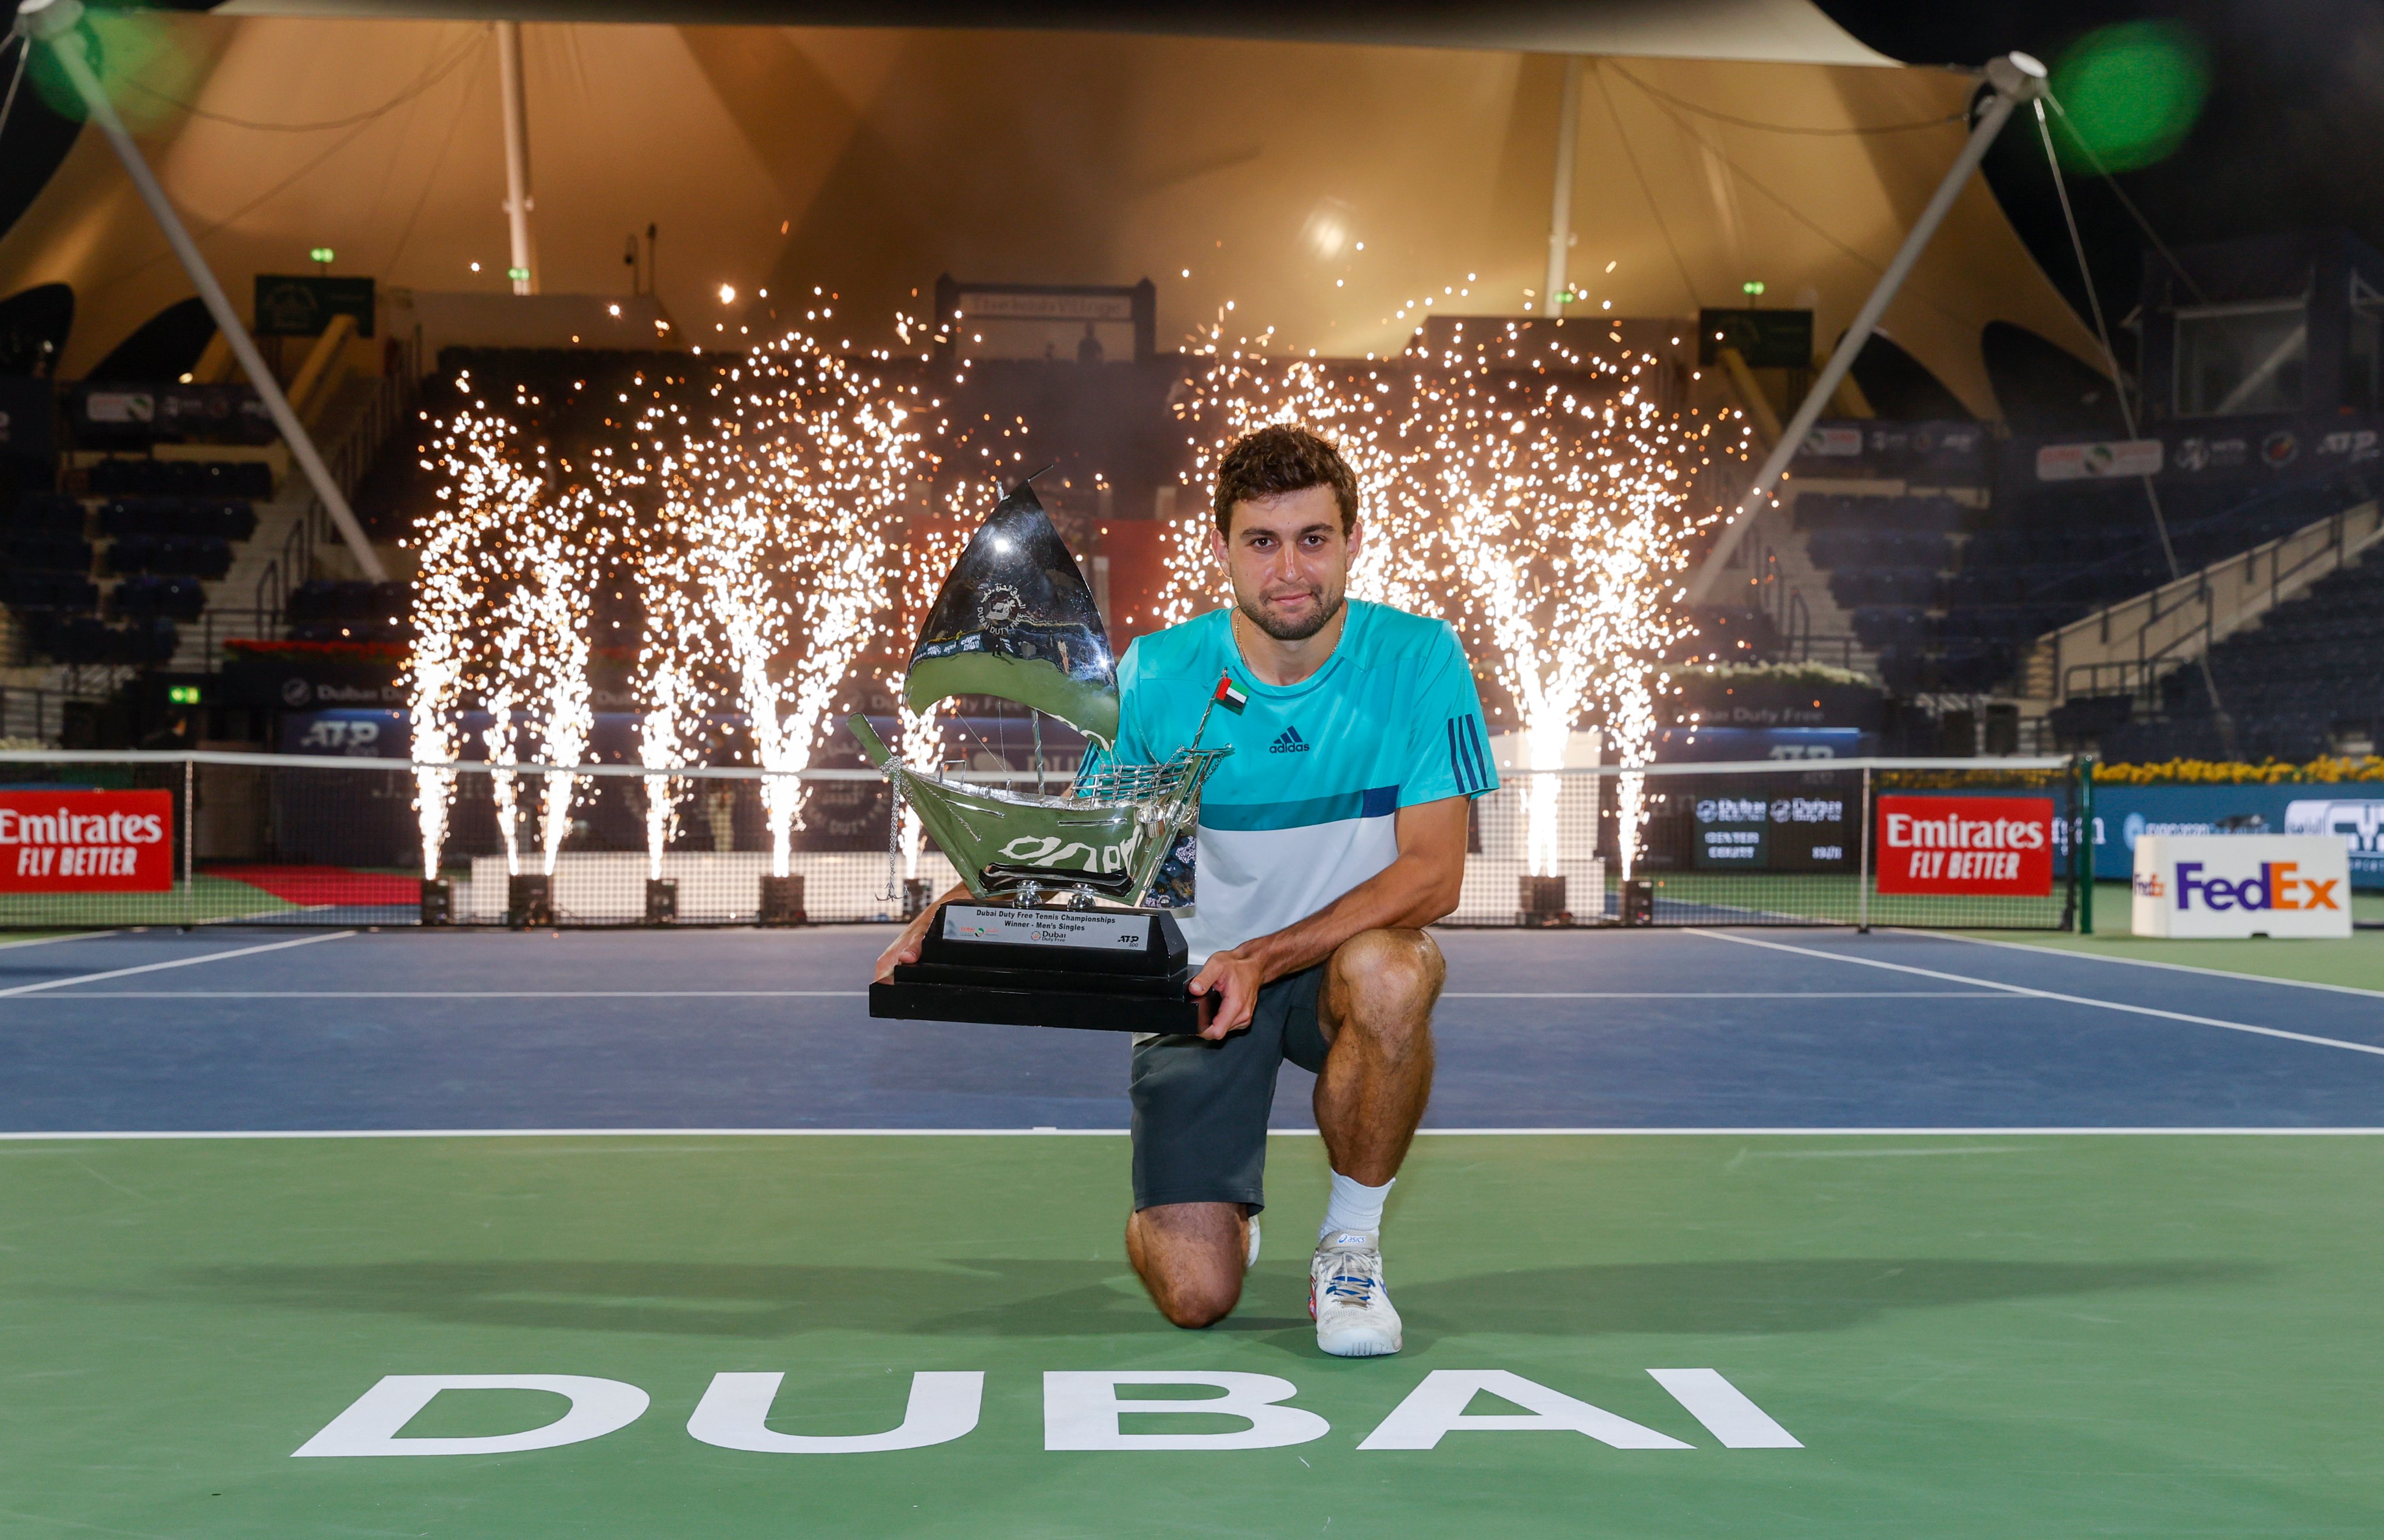 Campeão inédito: Karatsev conquista o ATP 500 de Dubai · Revista TÊNIS